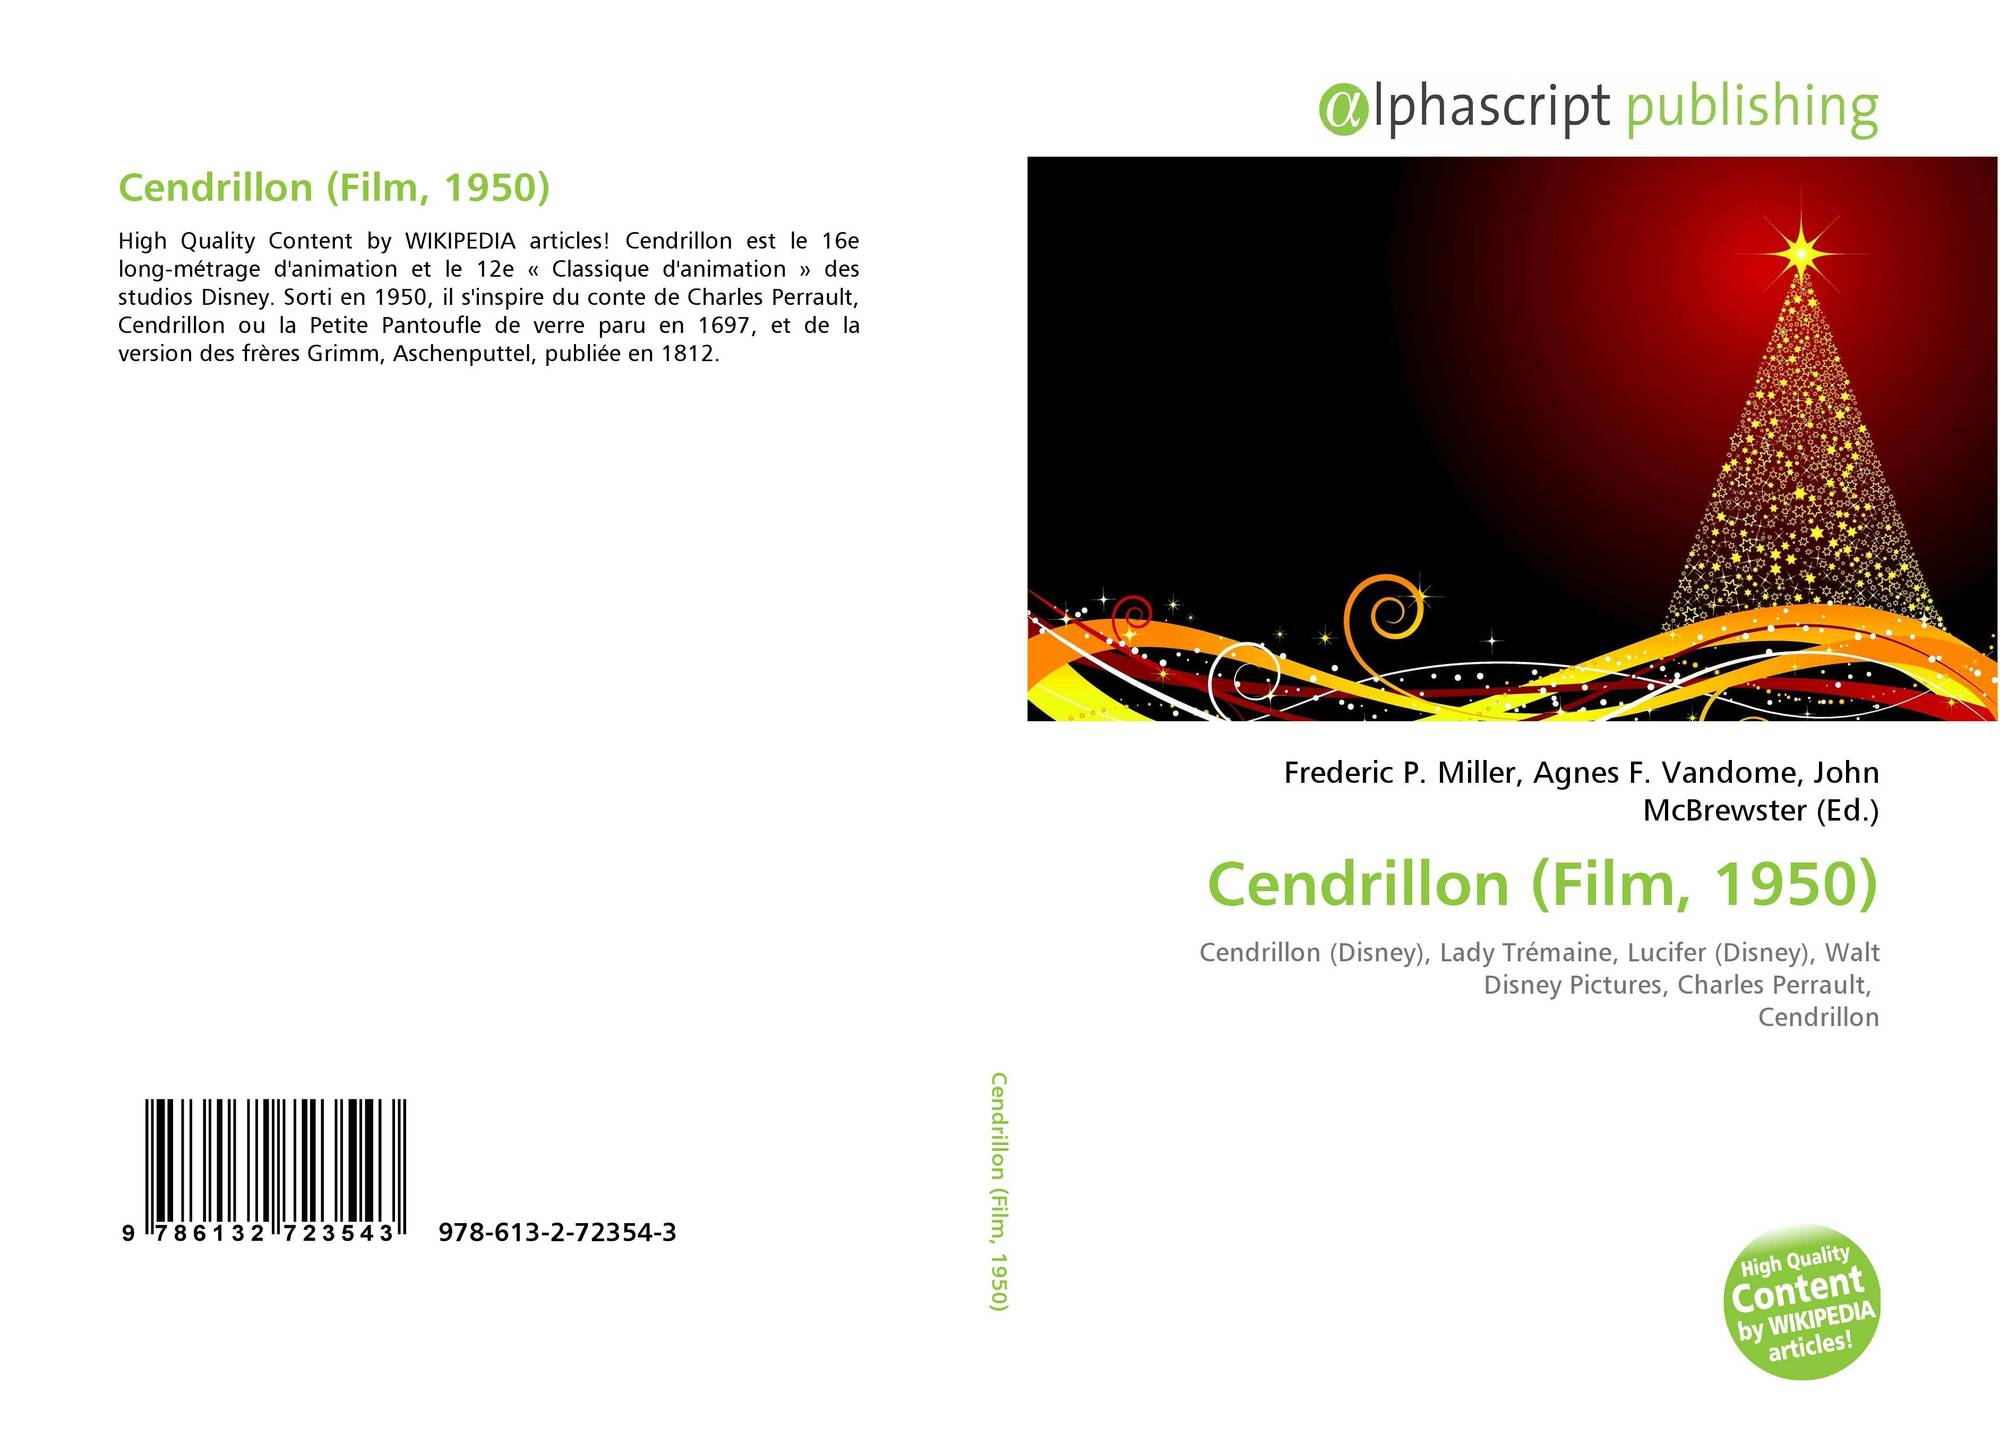 Cendrillon (Film, 1950), 978-613-2-72354-3, 6132723544 destiné Cendrillon 3 Disney